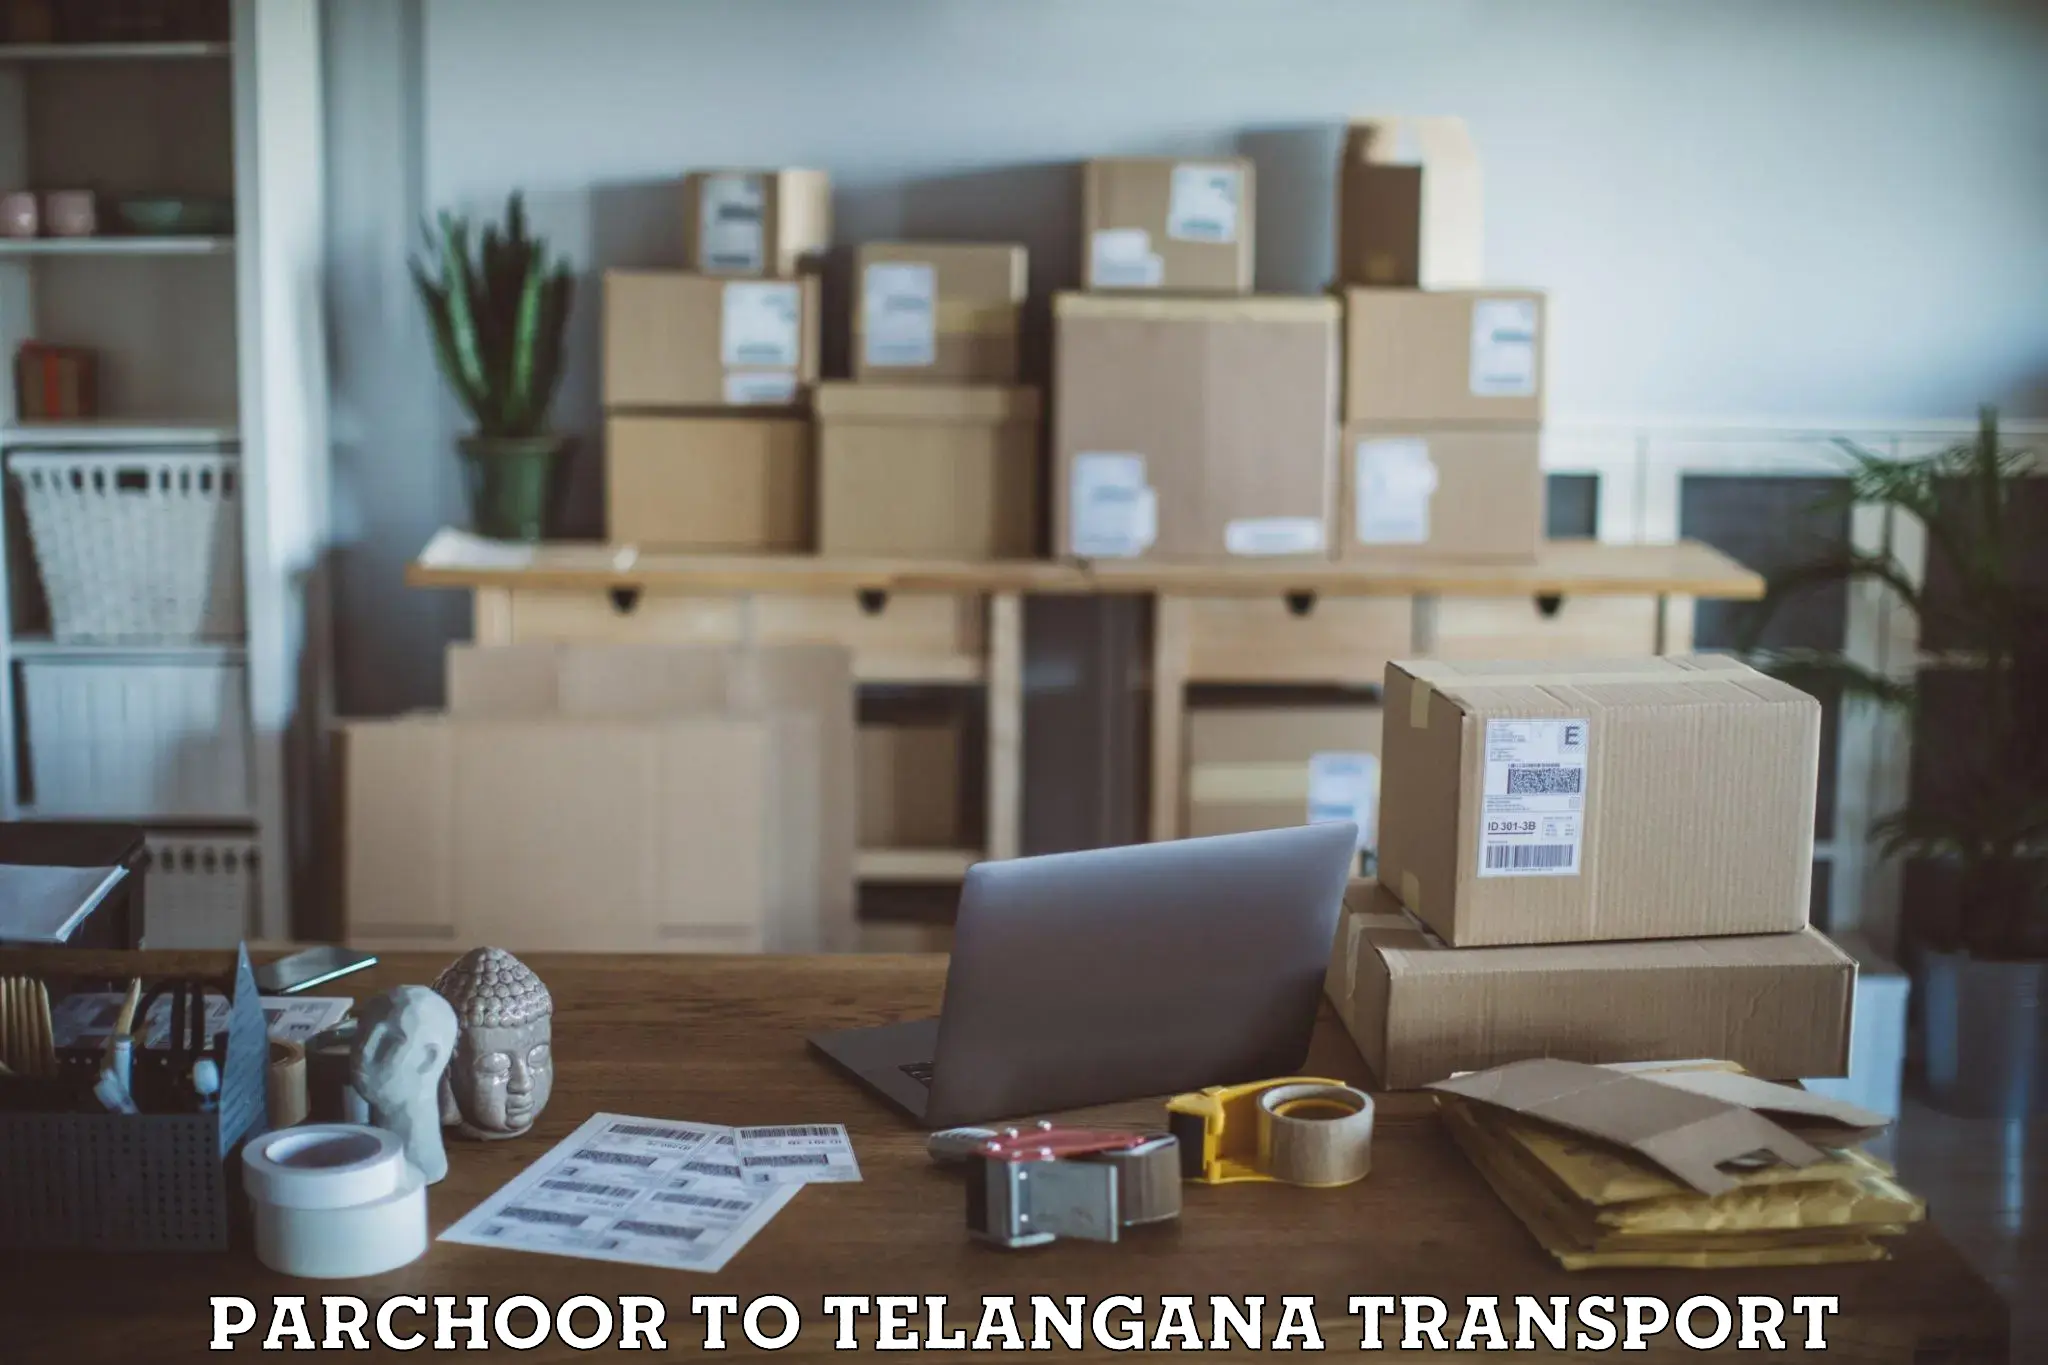 Transport shared services Parchoor to Kothakota